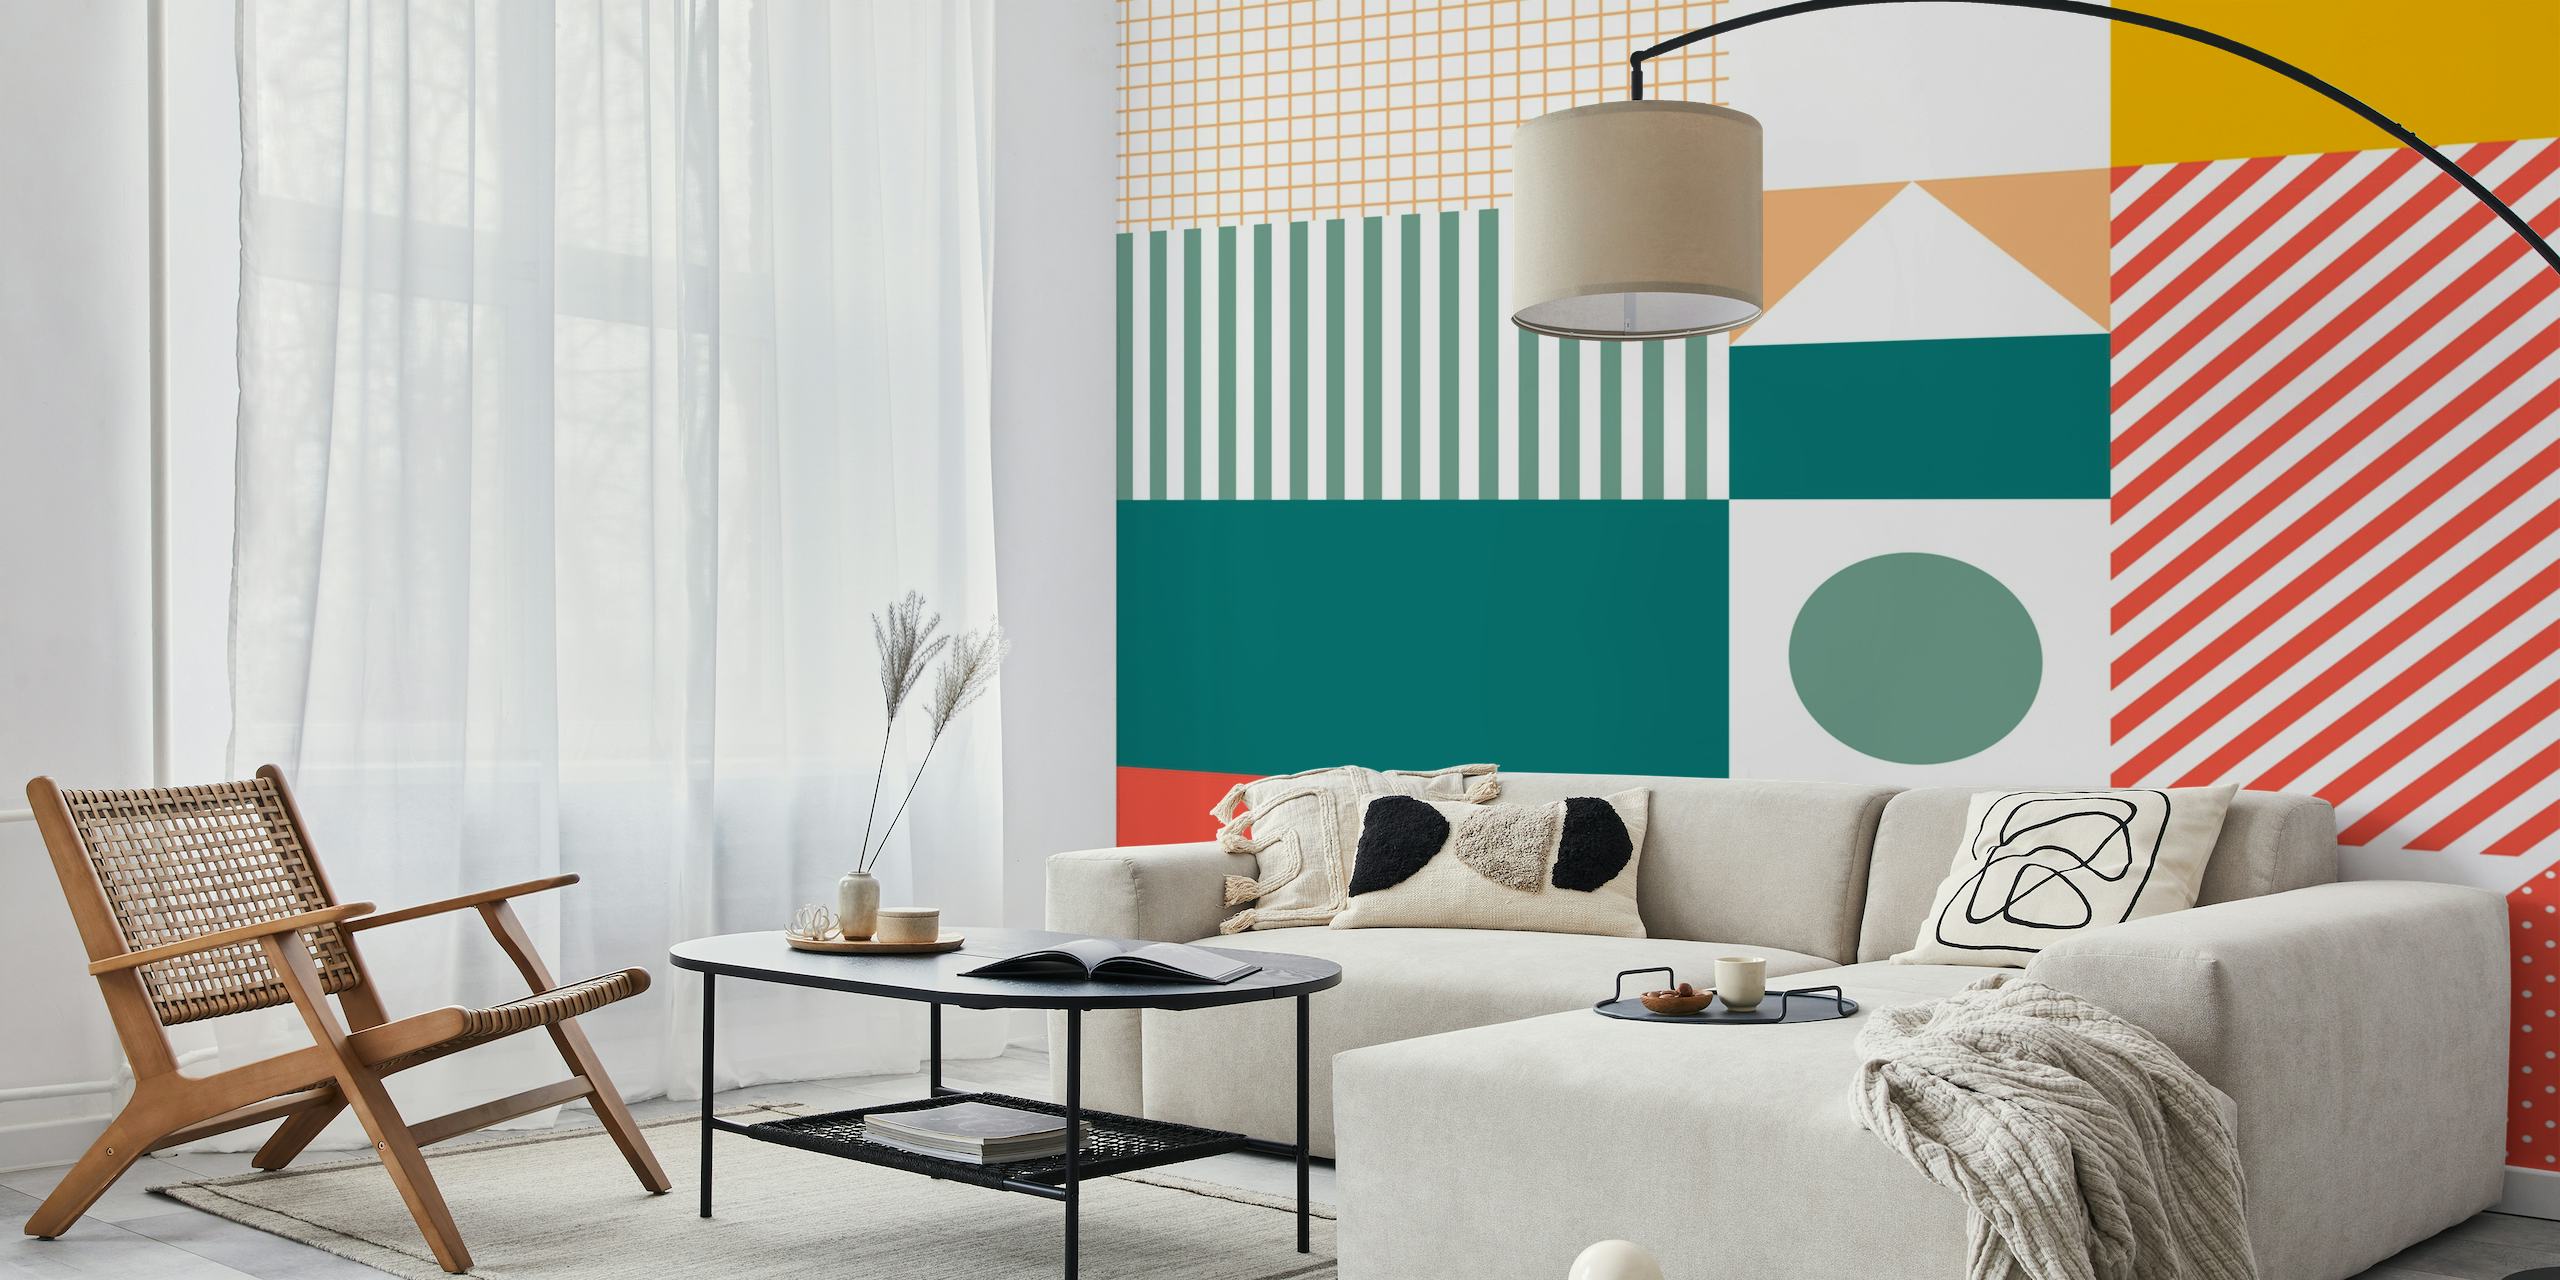 Kleurrijke muurschildering met geometrische patronen met een mix van geruite vierkanten en strepen in mandarijn-, blauwgroen- en pasteltinten.